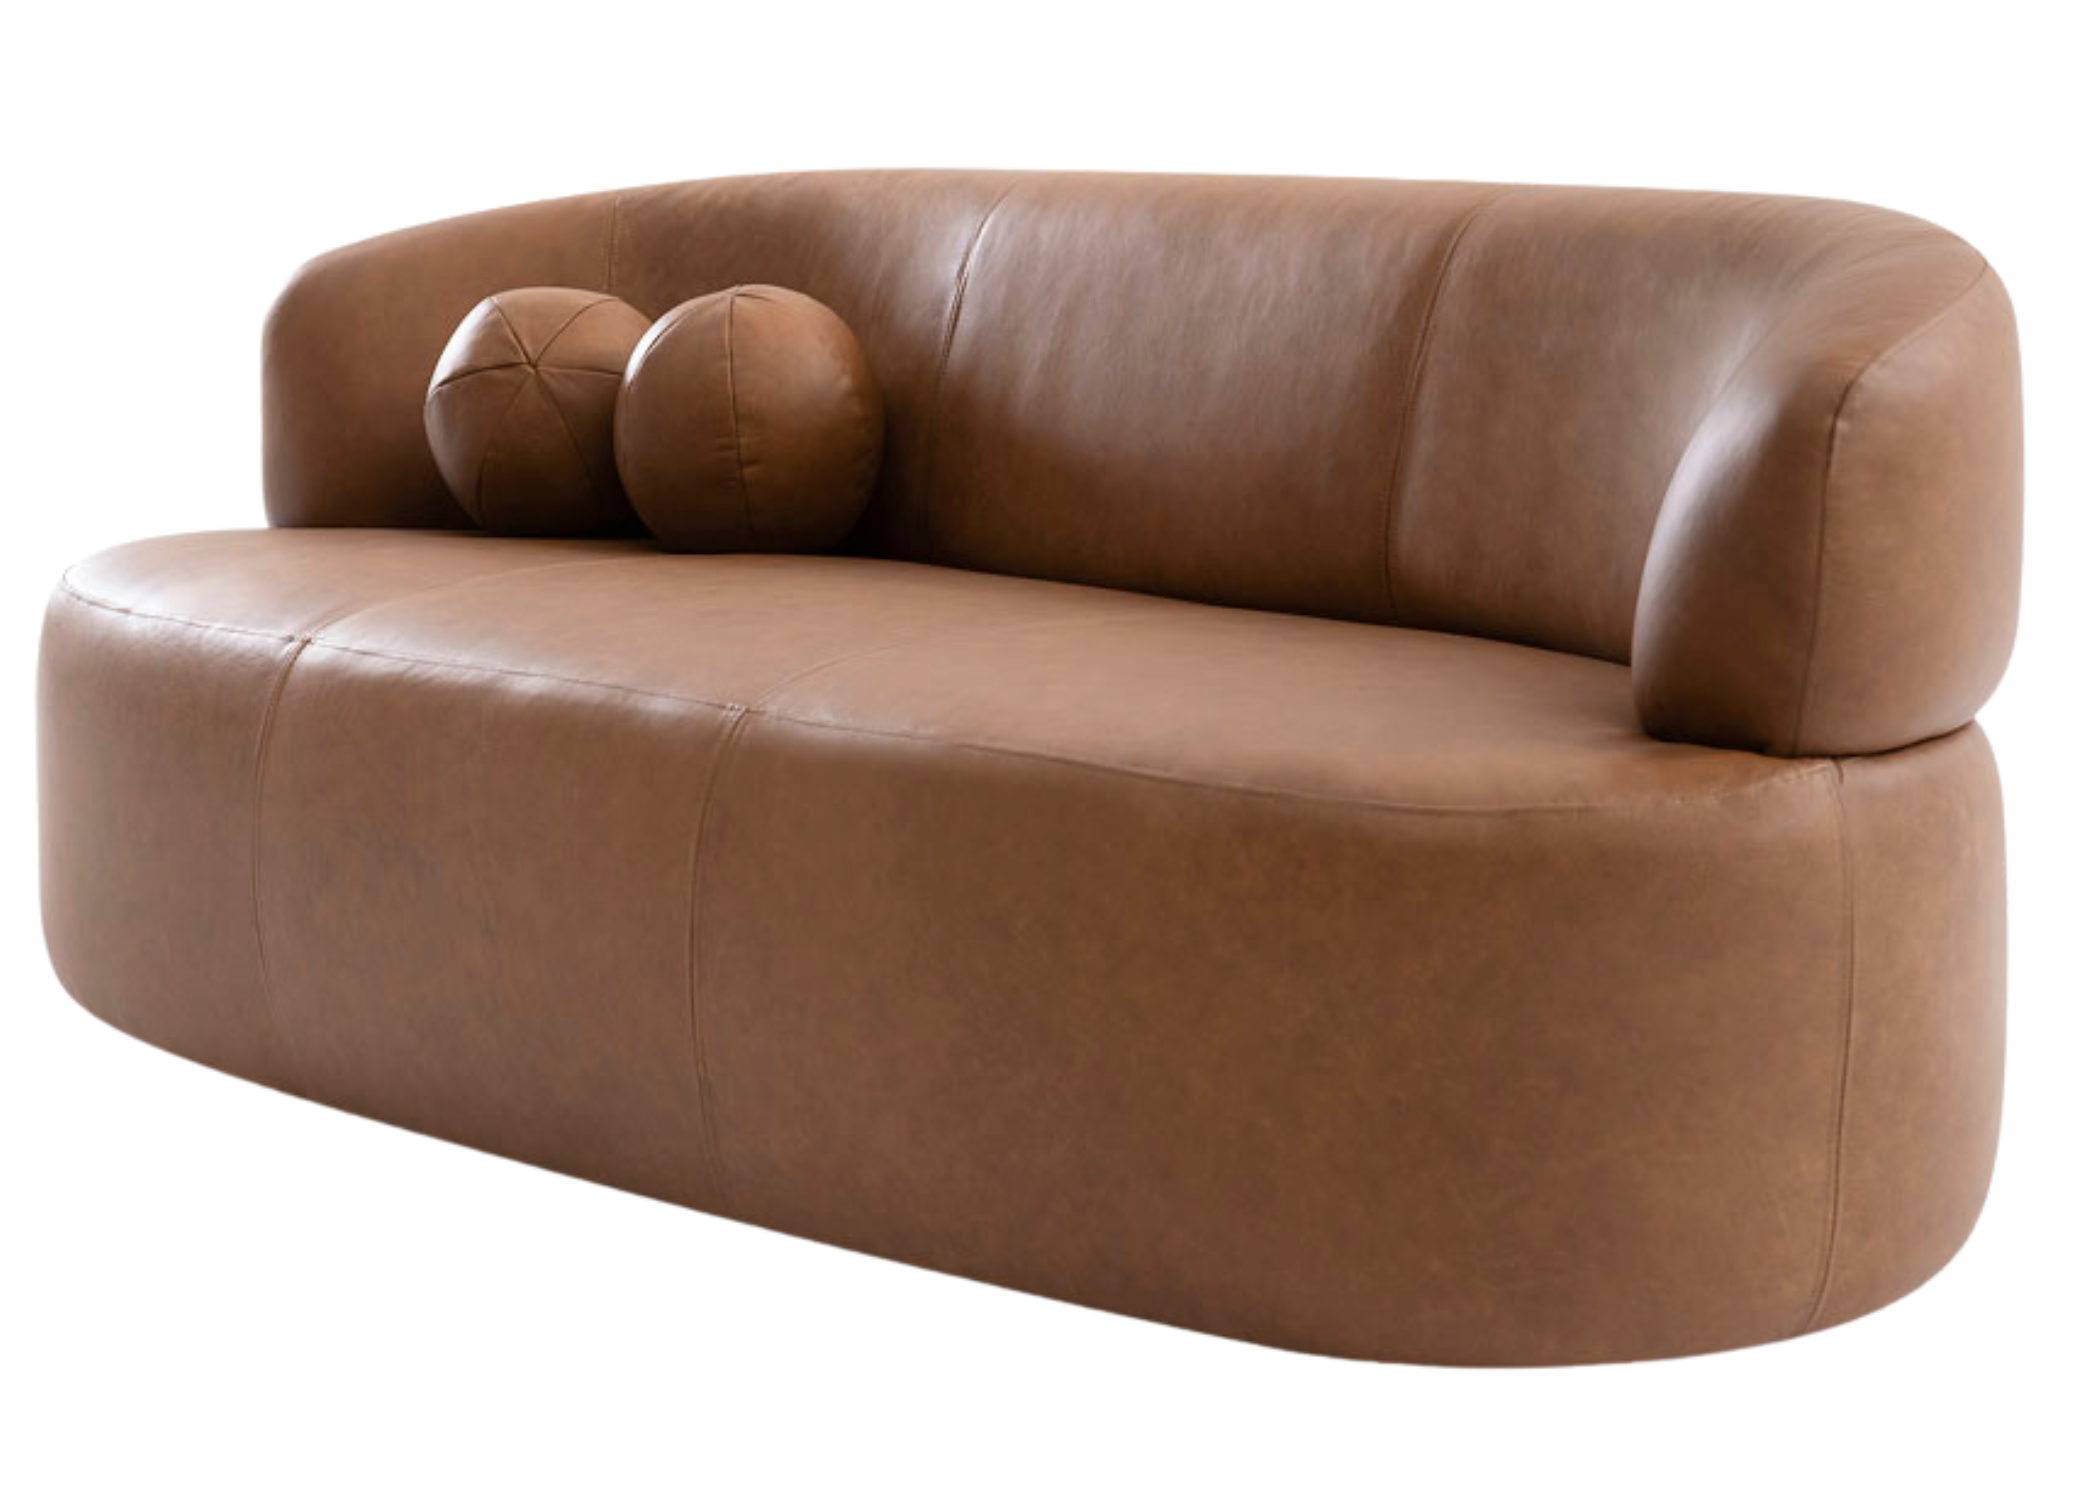 Detalhe do design limpo e atemporal do sofá Sândalo, integrando-se perfeitamente a diferentes estilos de decoração.